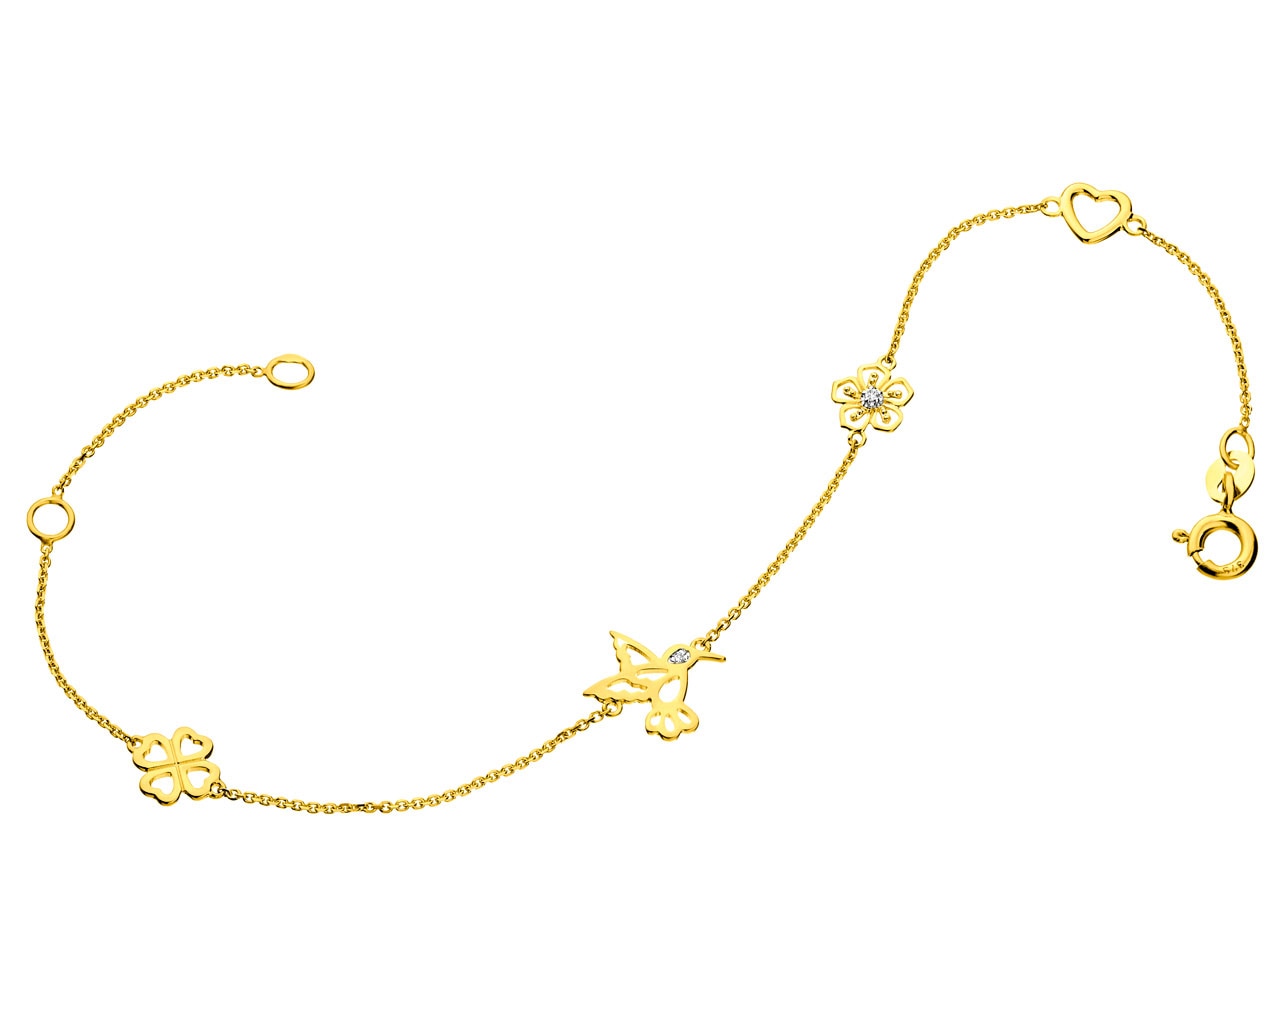 Bransoleta z żółtego złota z diamentami  - koliber, koniczyna, kwiatek 0,01 ct - próba 375